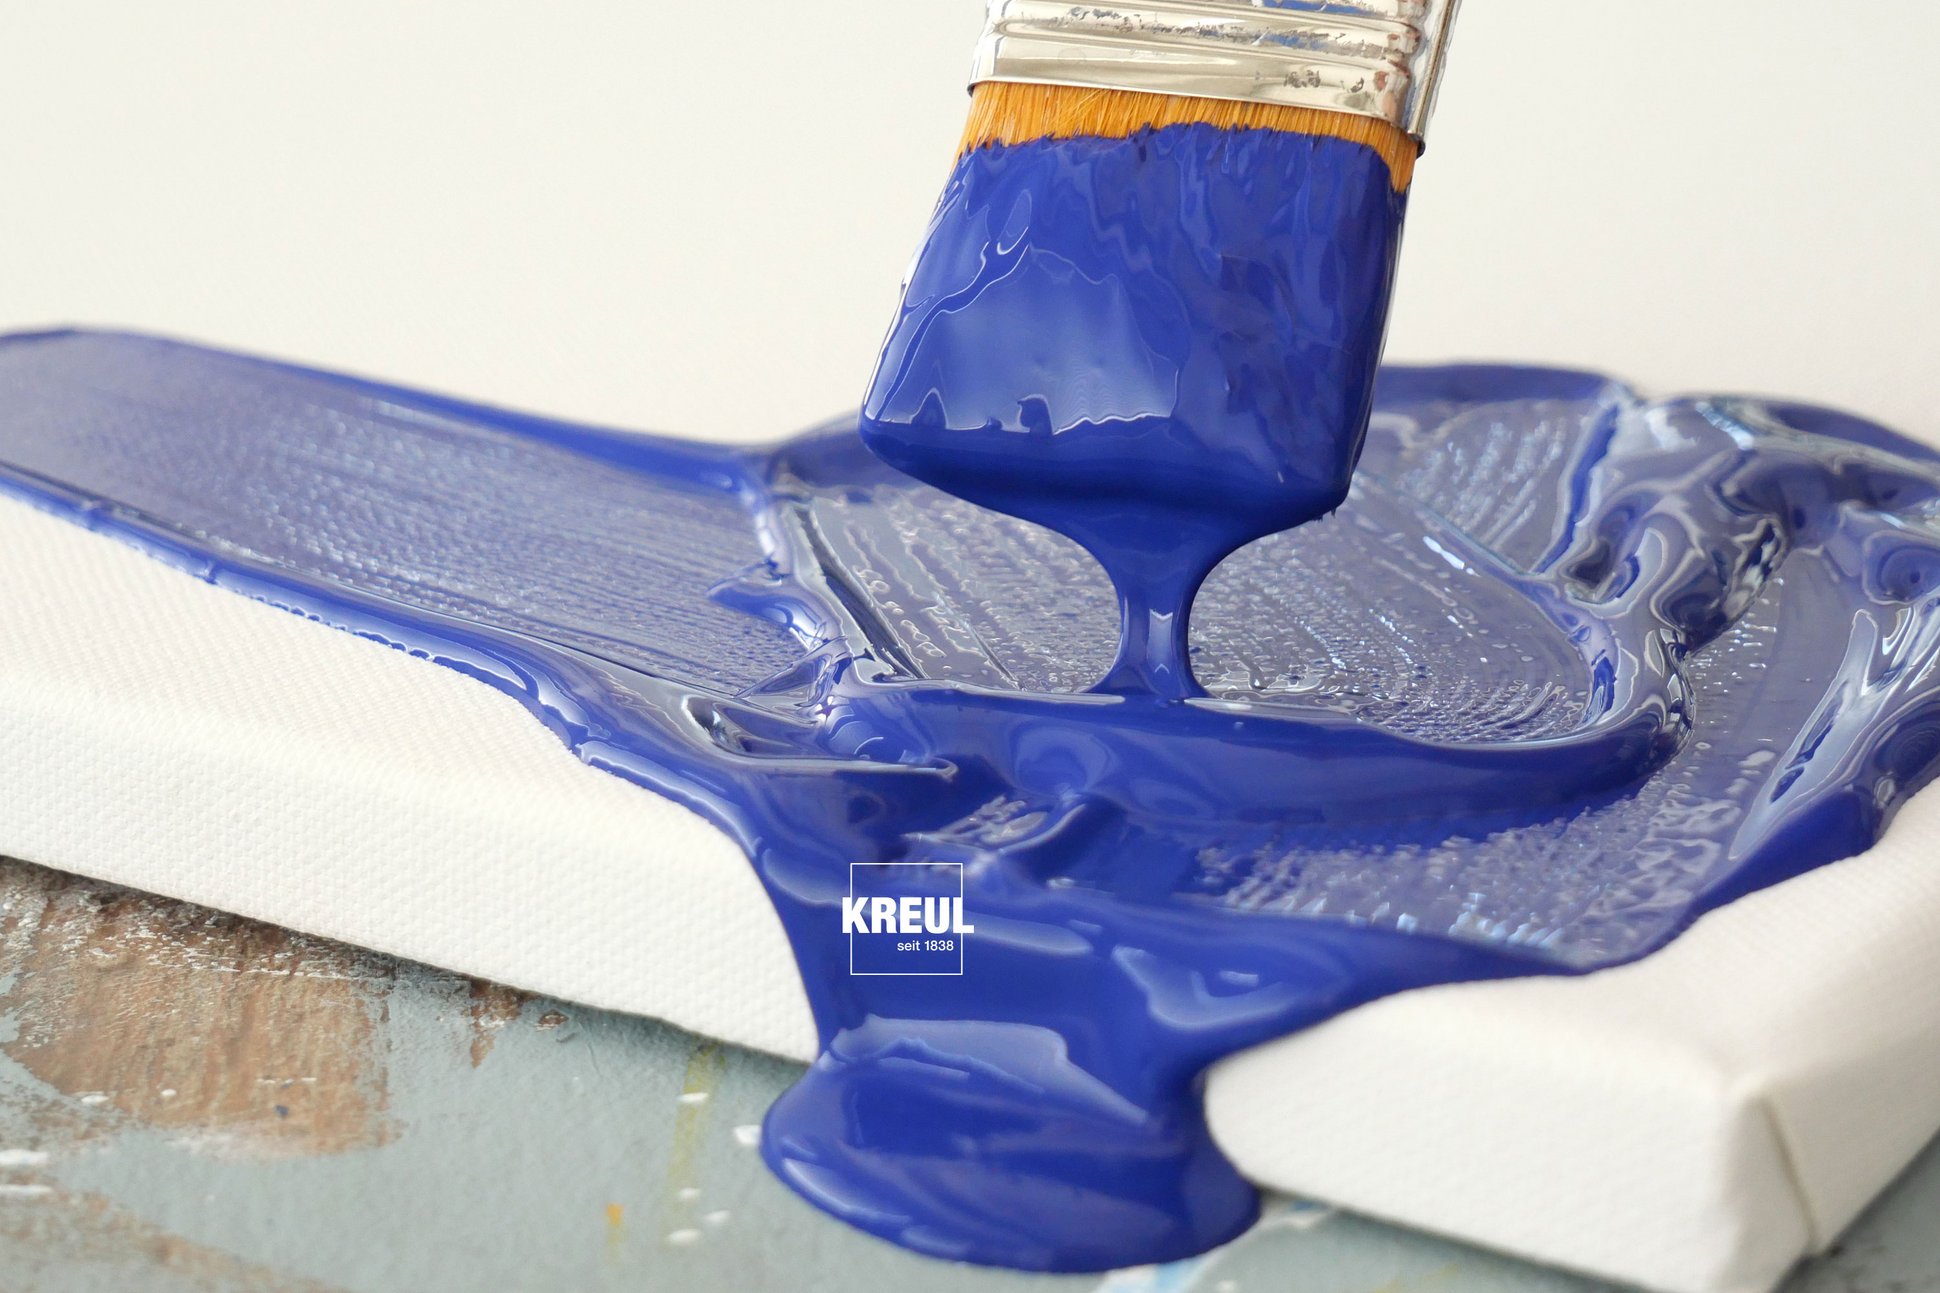 Ultramarinblau als Mischfarbe bei Acrylfarben Möglichkeiten